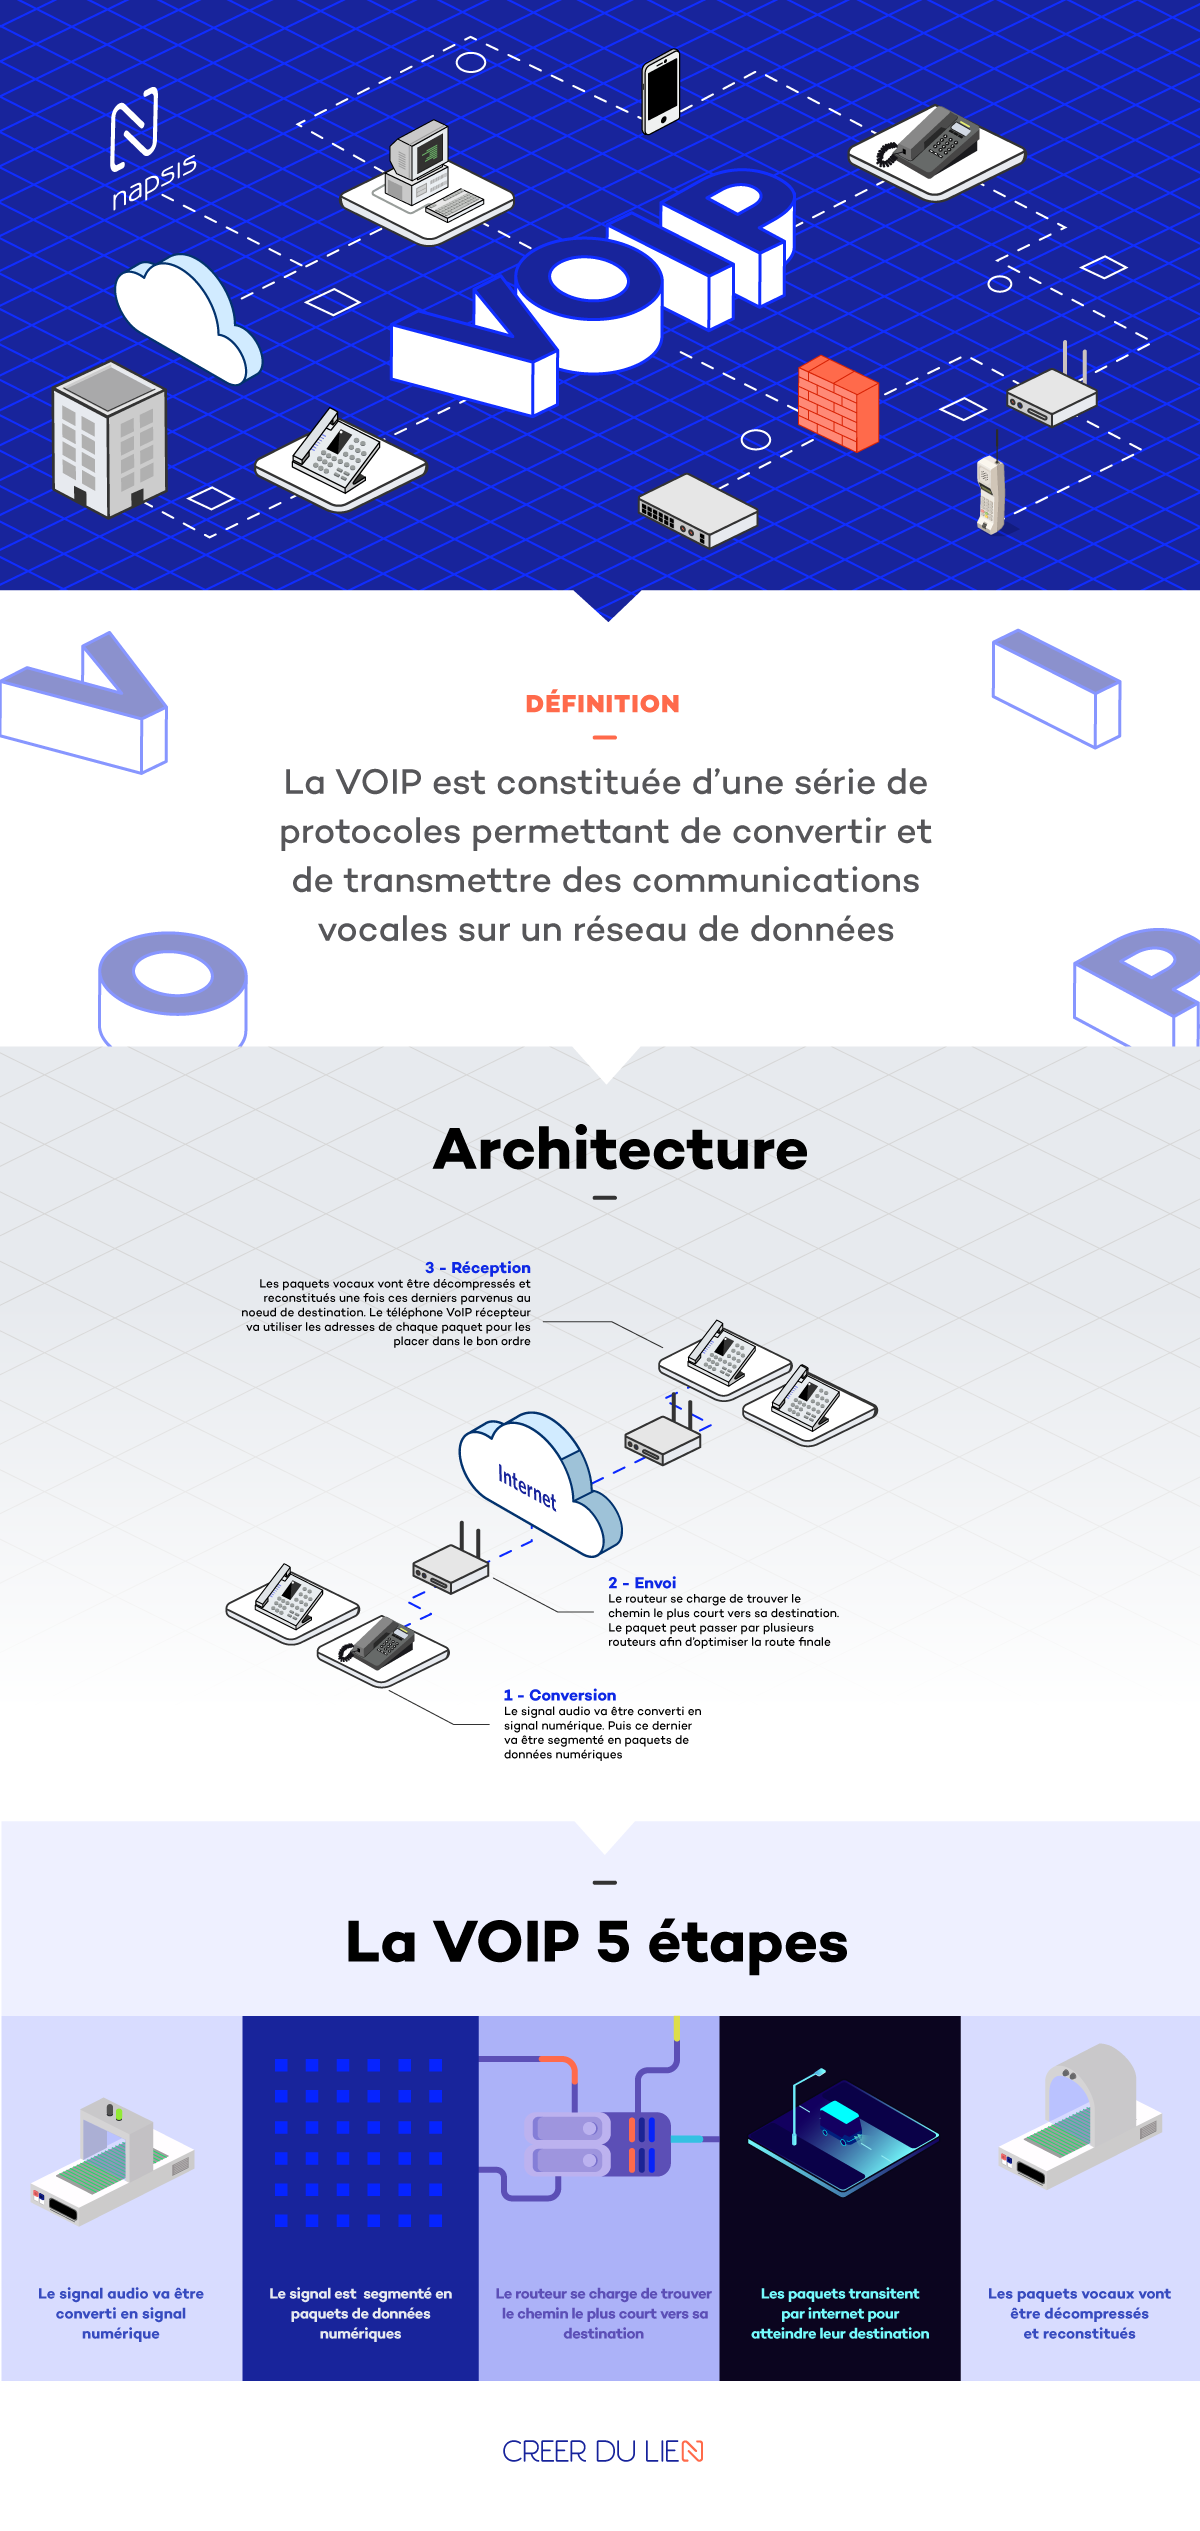 Infographie sur la définition et le fonctionnement de la VoIP